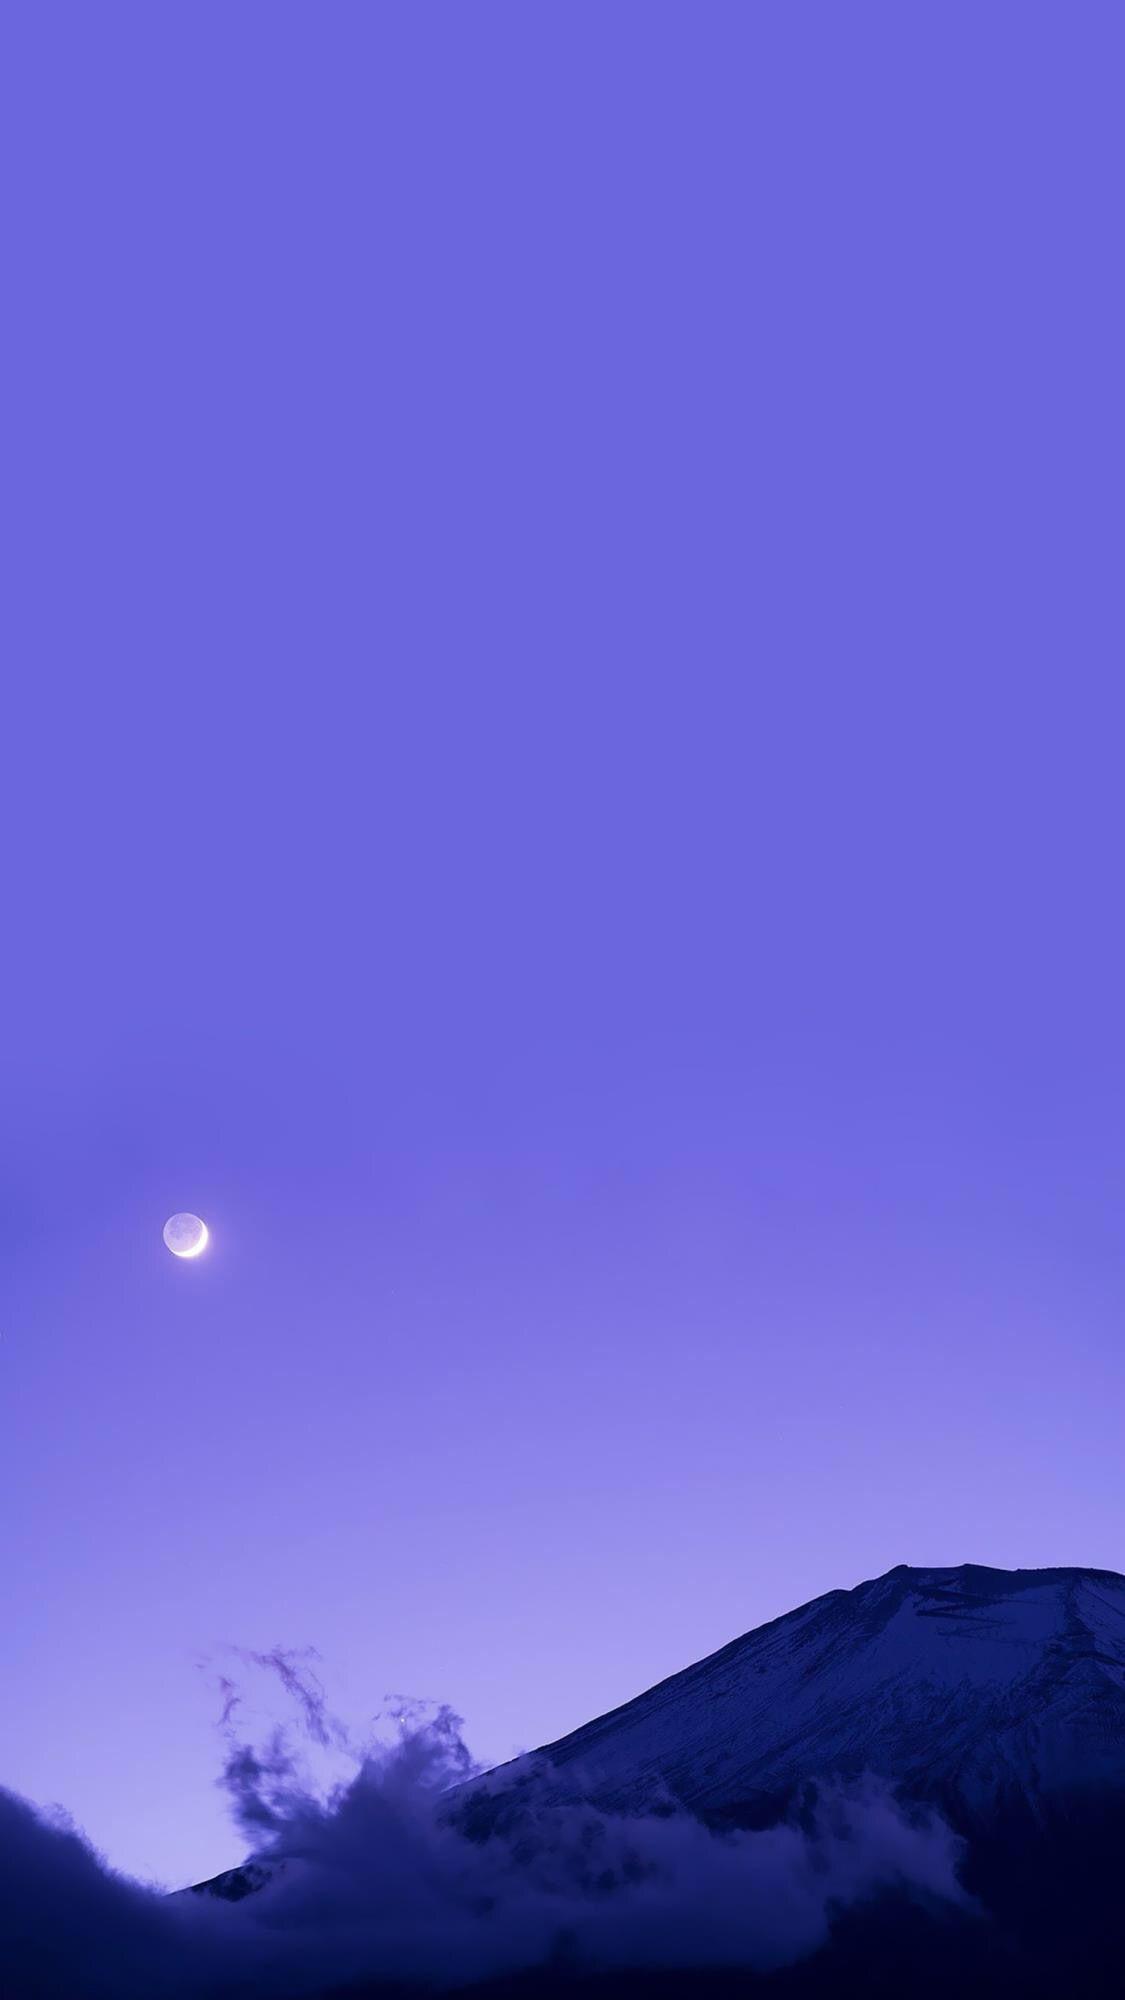 蓝紫色浪漫星空背景素材免费下载(图片编号:9332268)-六图网